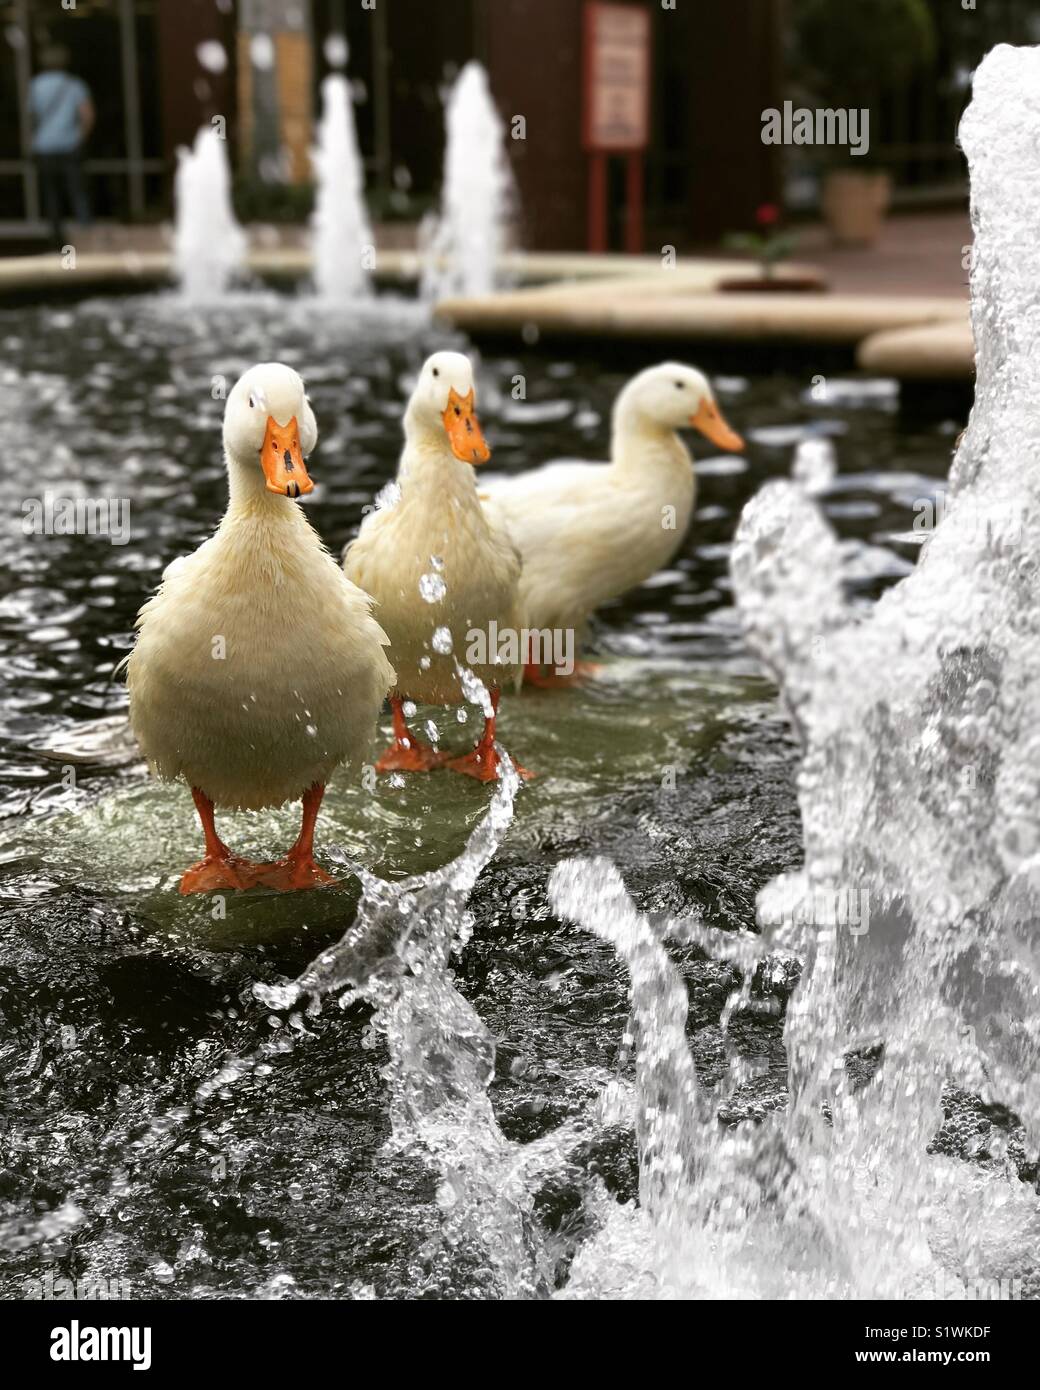 Ducks having fun in water Stock Photo